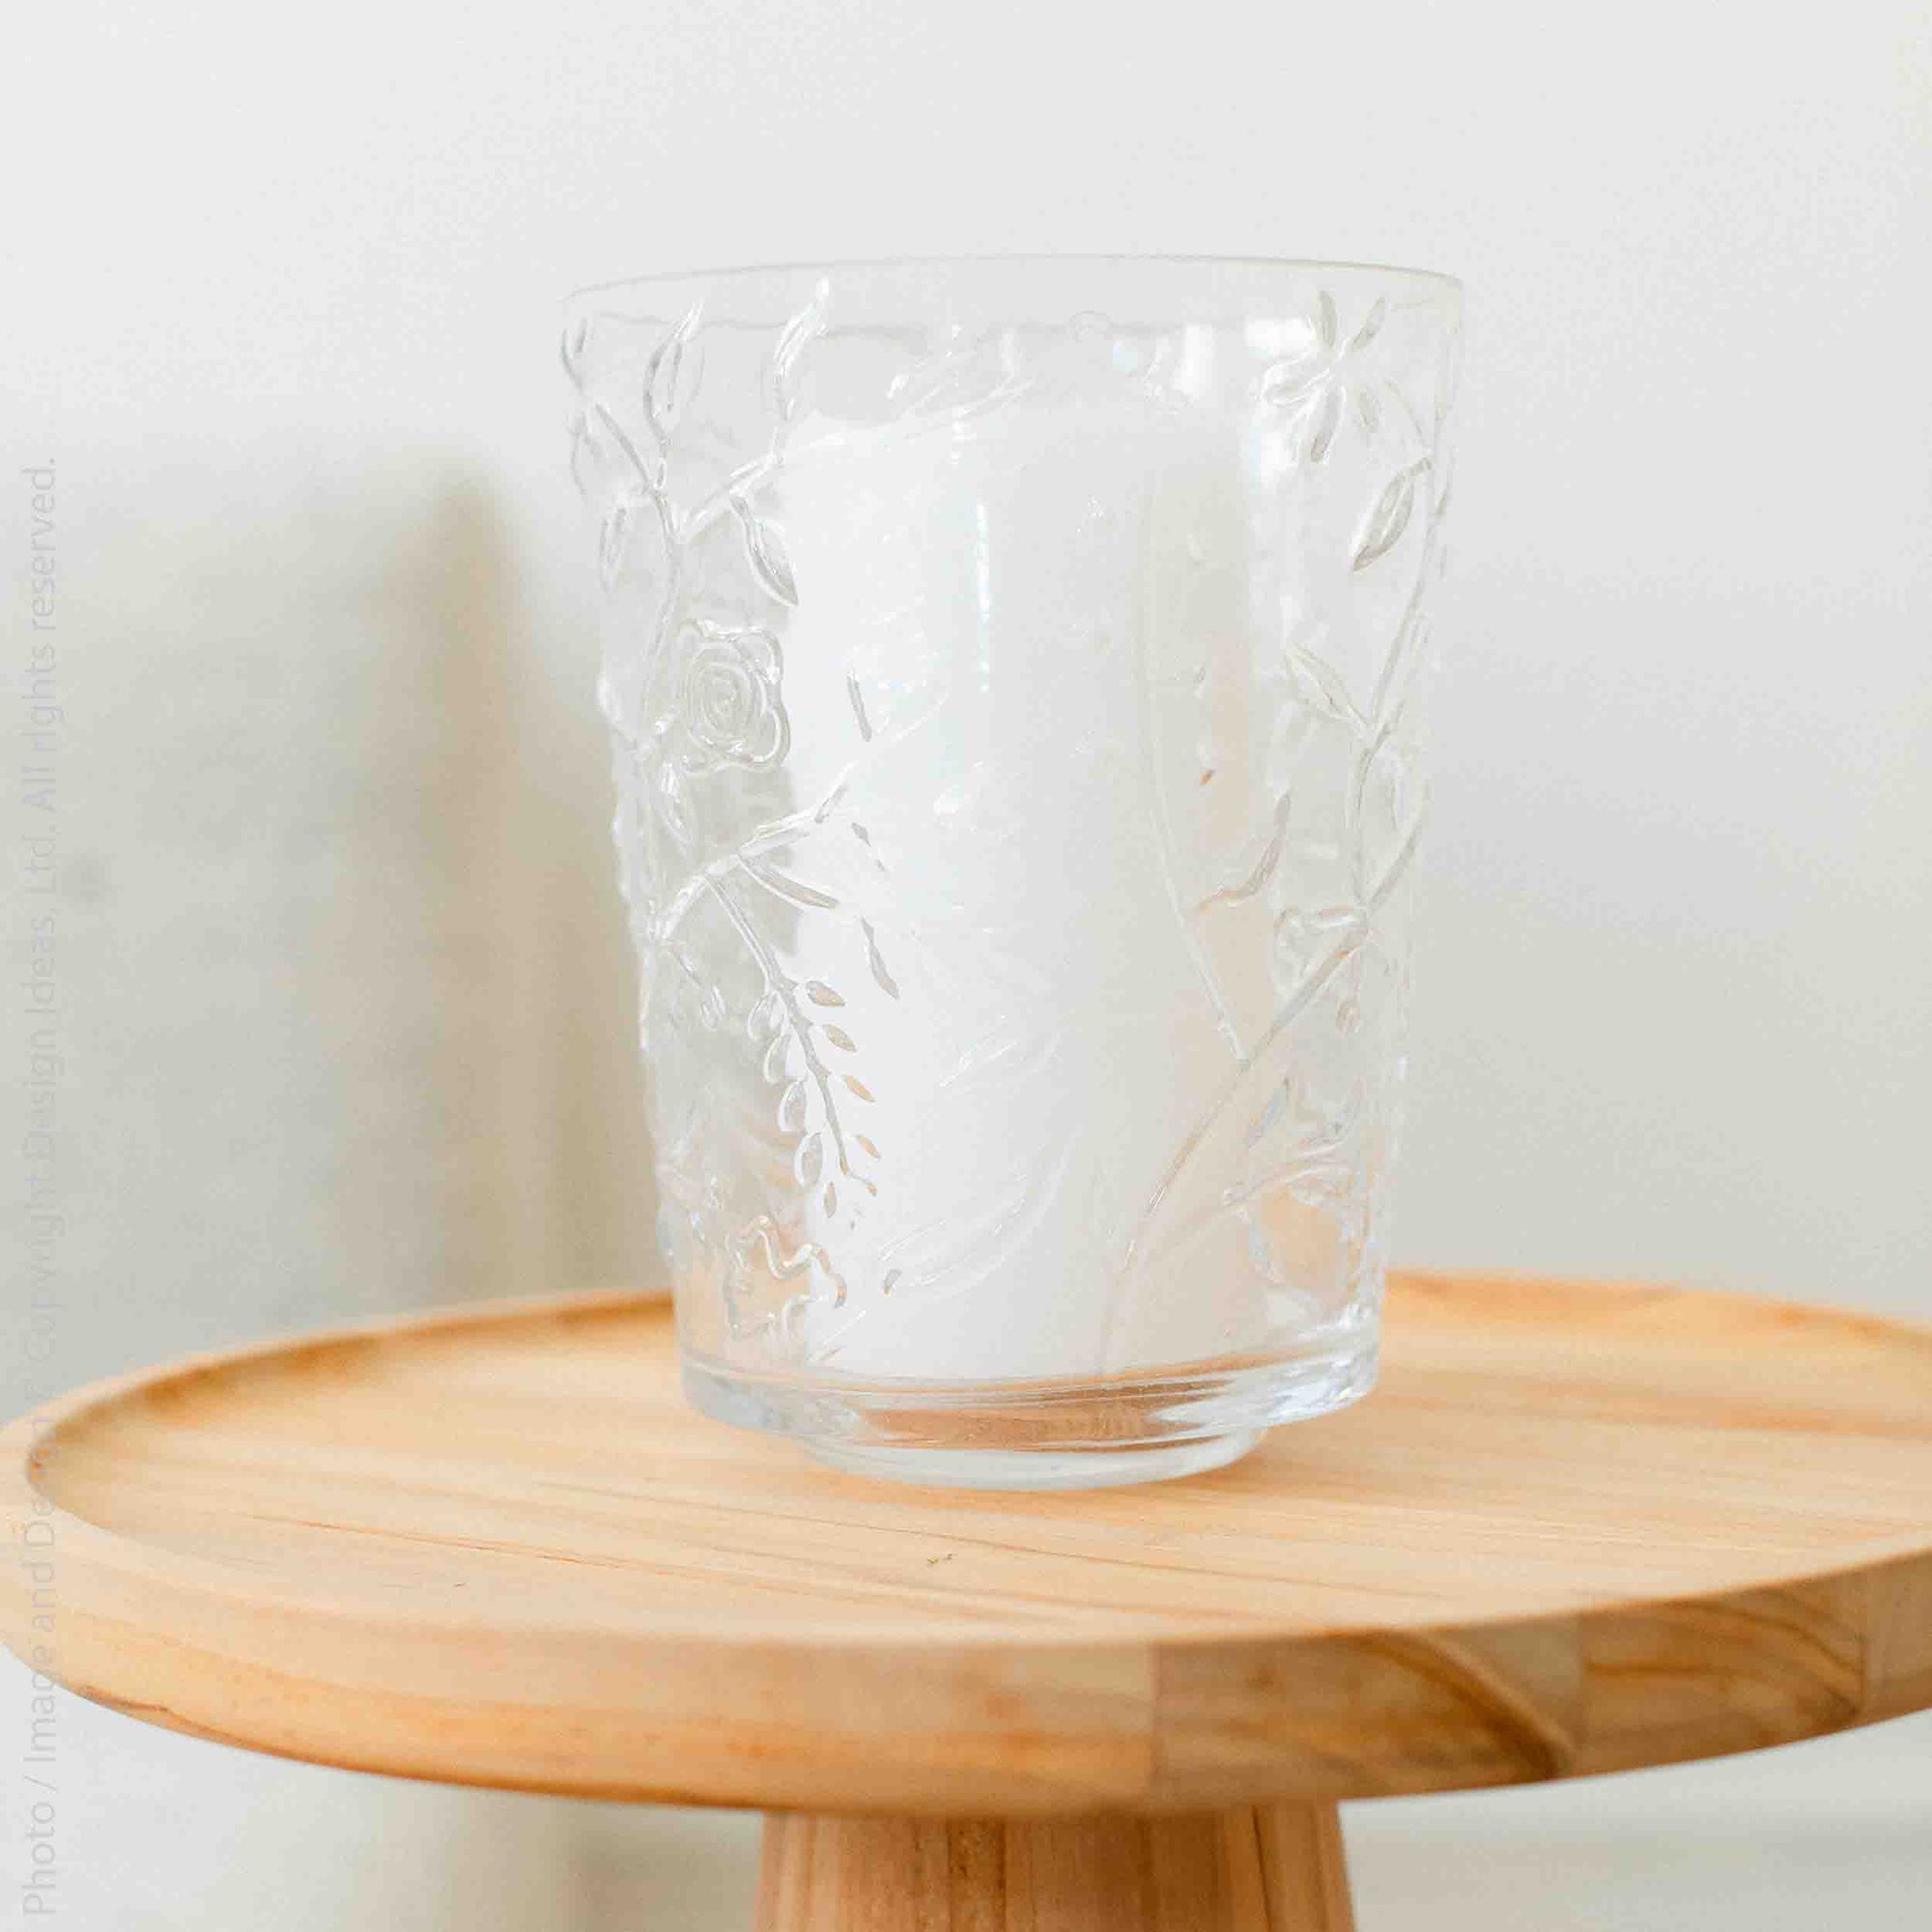 Abloom™ glass vase